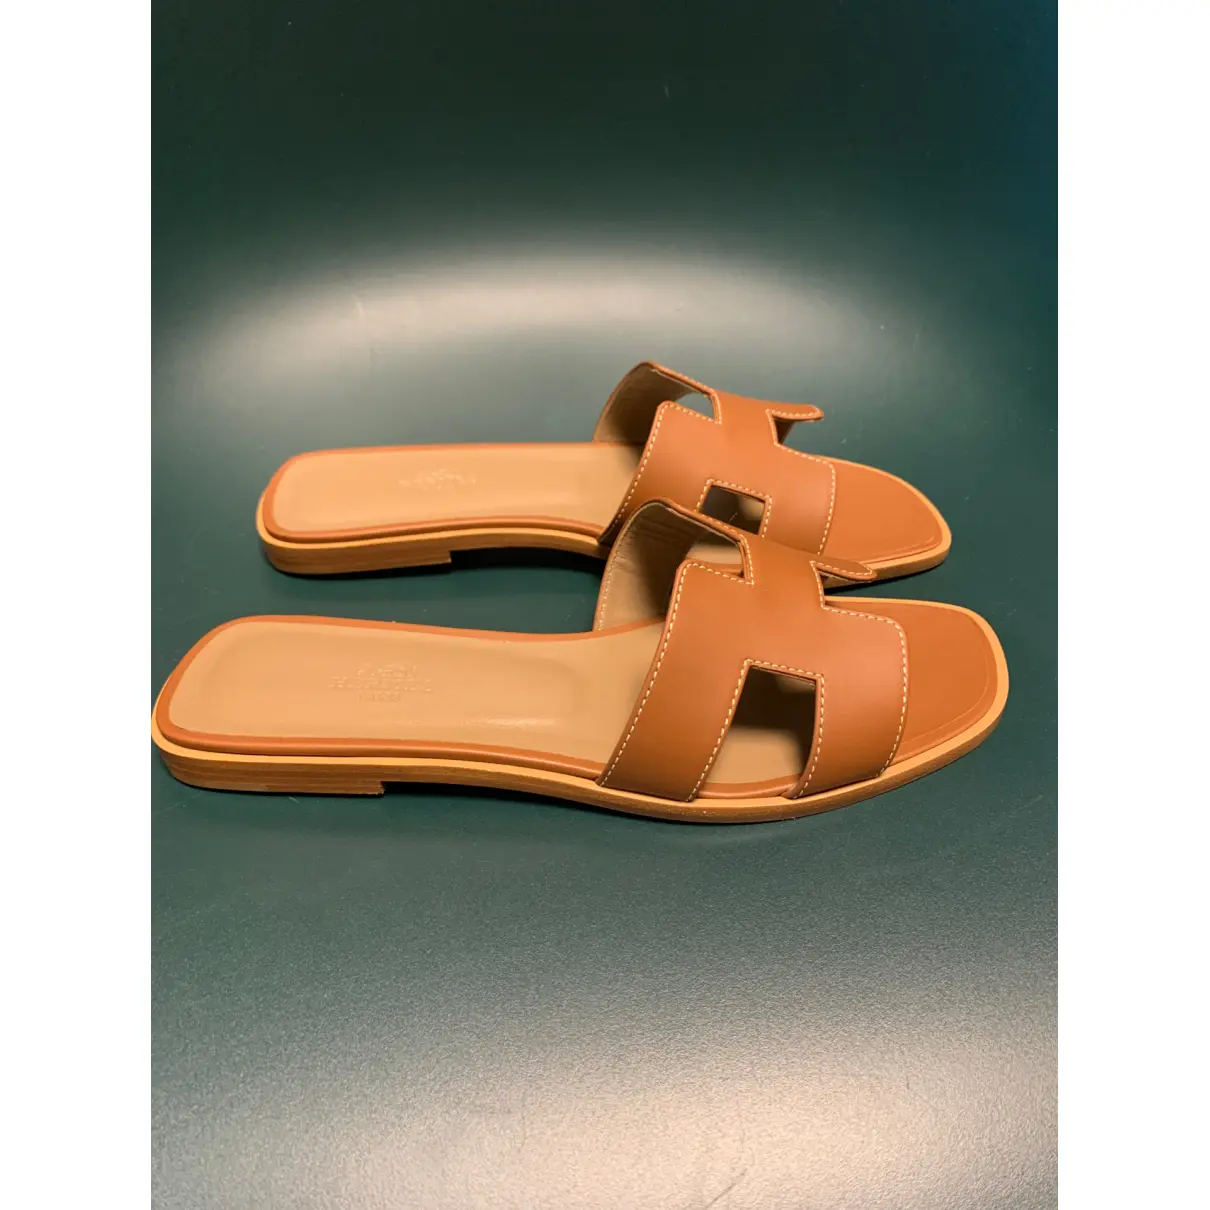 Buy Hermès Oran leather flip flops online